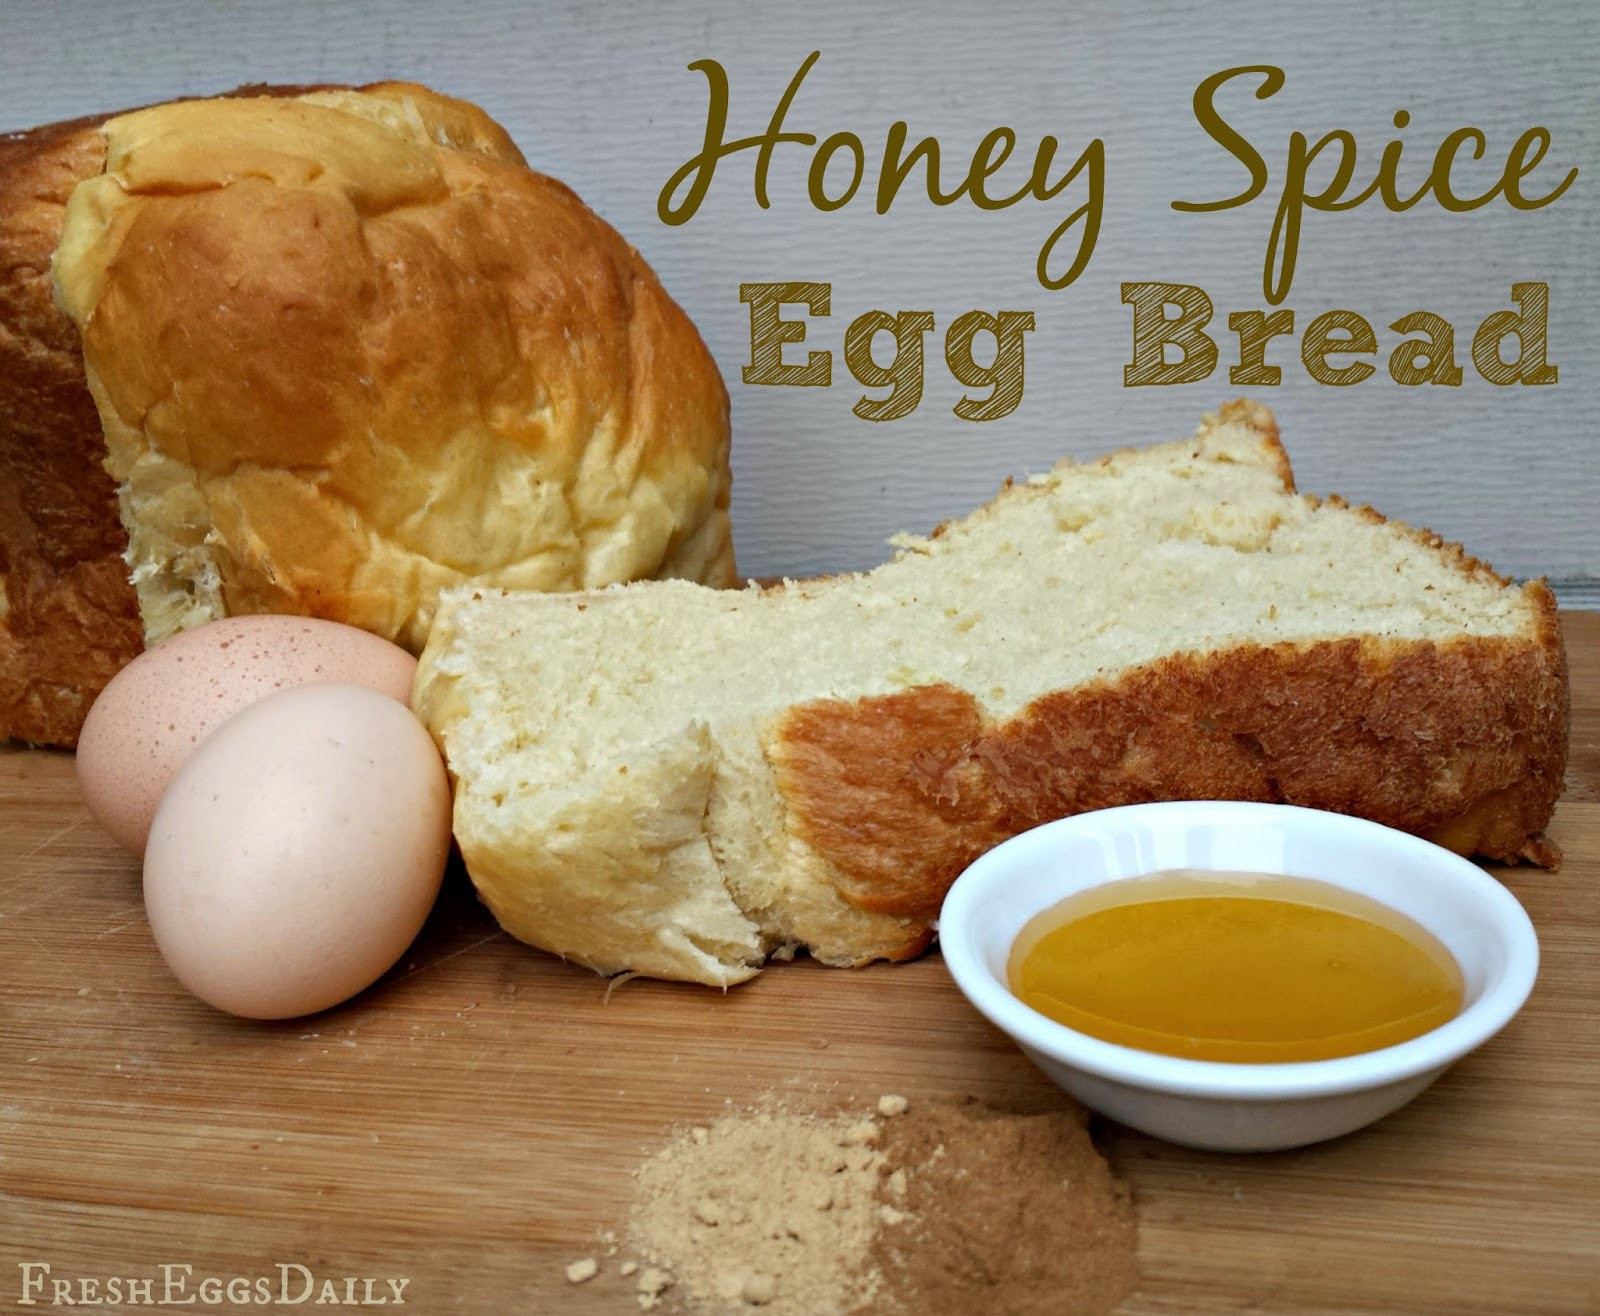 Egg Bread Recipe For Bread Machine
 Honey Spice Egg Bread Recipe for your Bread Machine